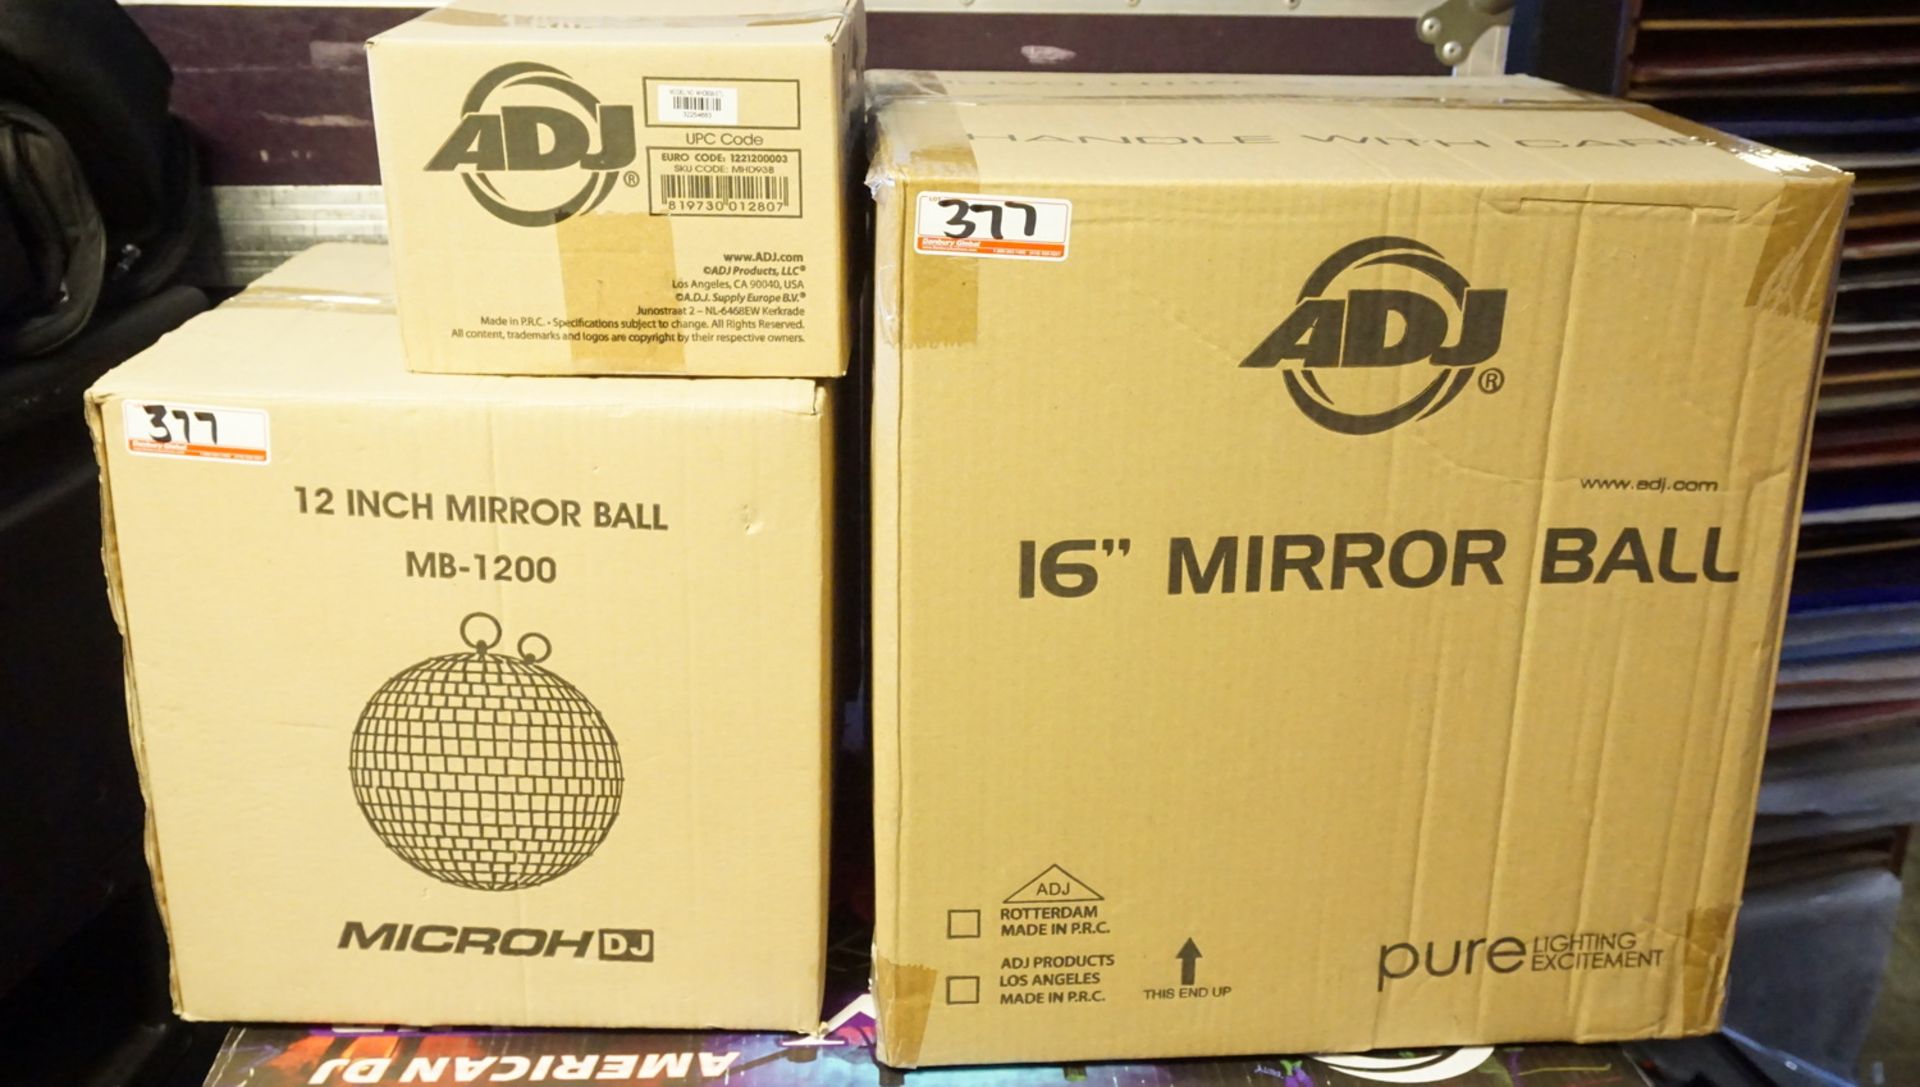 LOT - ADJ, MICROH MB 1200 16" MIRROR BALL C/W 12" BLACK MIRROR BALL, ADJ AC MOTOR